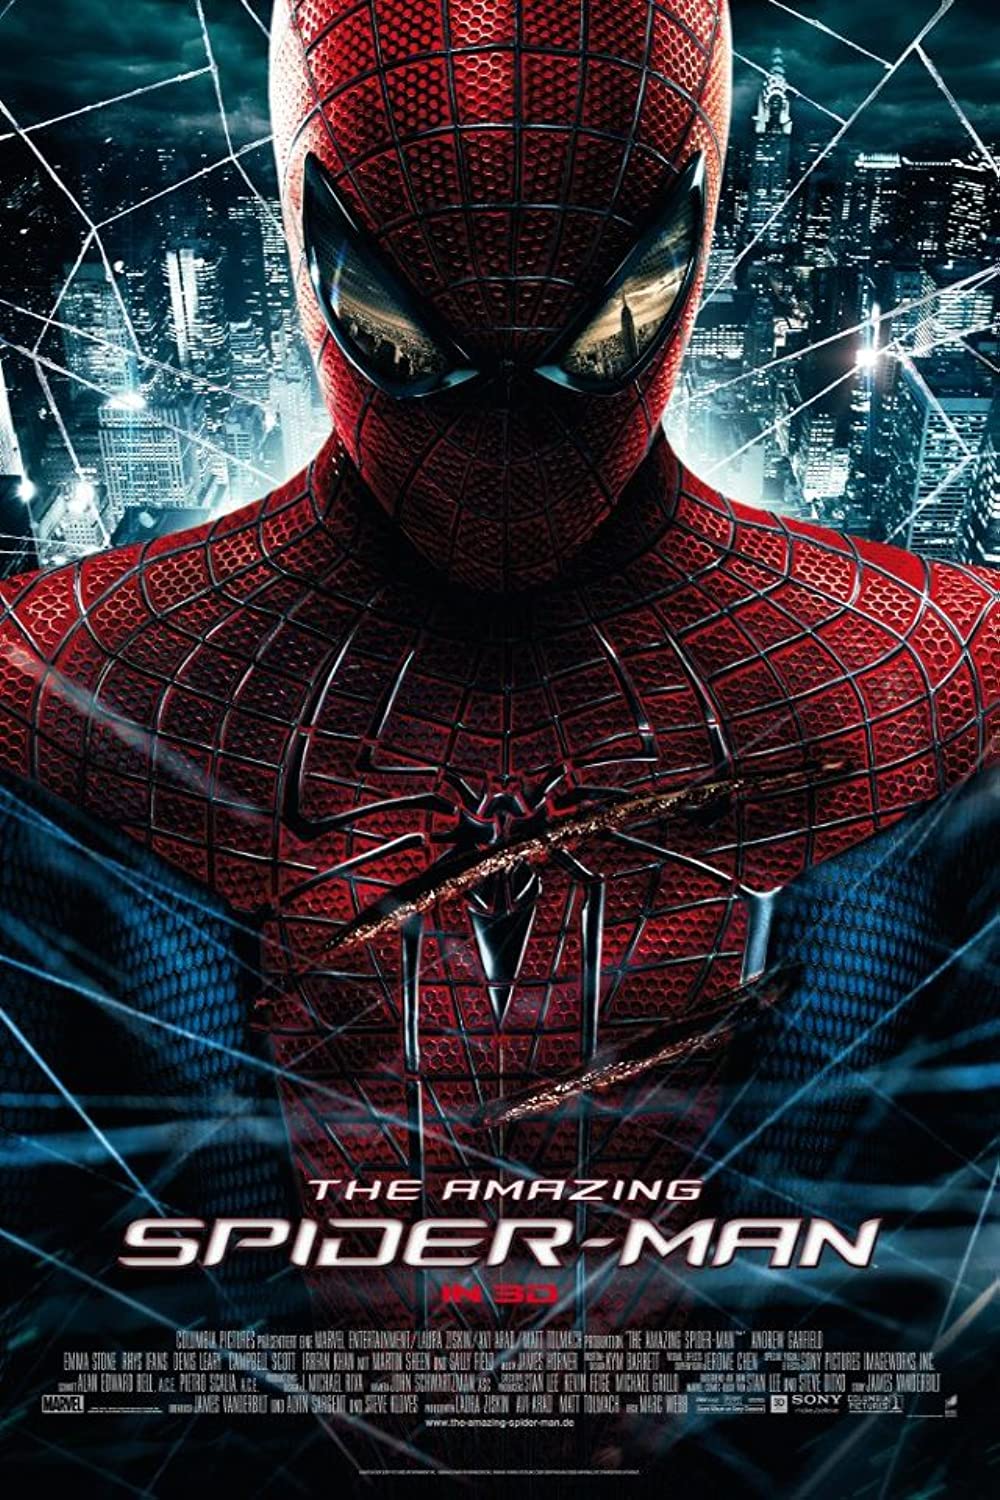 Filmbeschreibung zu The Amazing Spider-Man